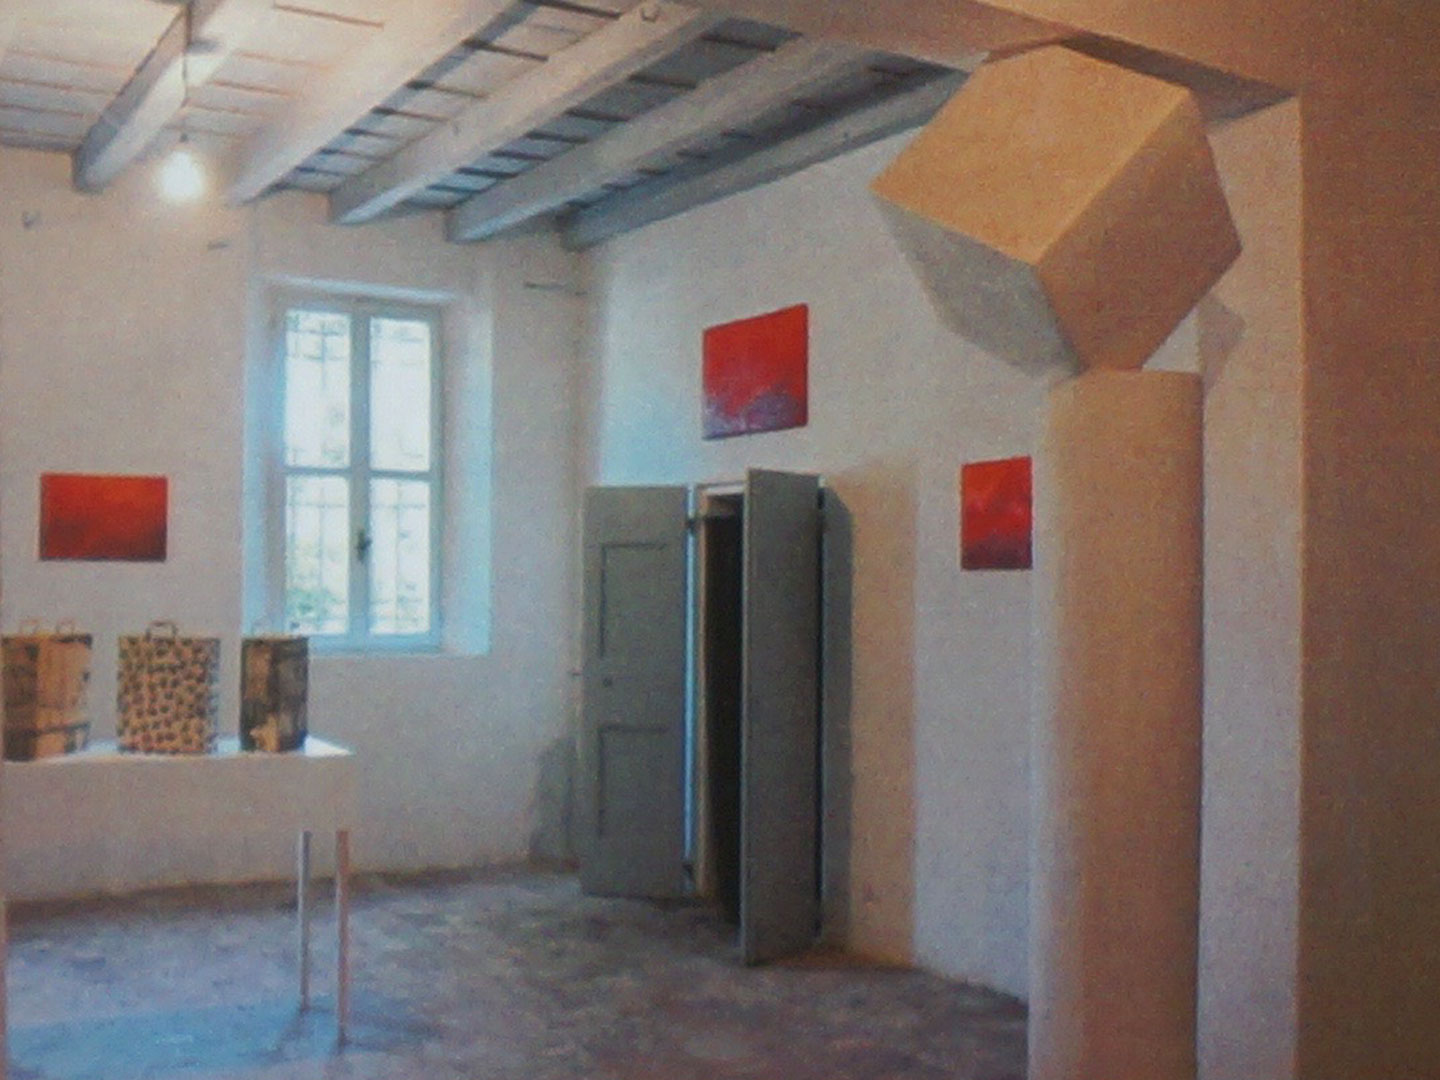 Ursula Heindl. Artfarm Pilastro - Derivart - Edizione 8, 2009